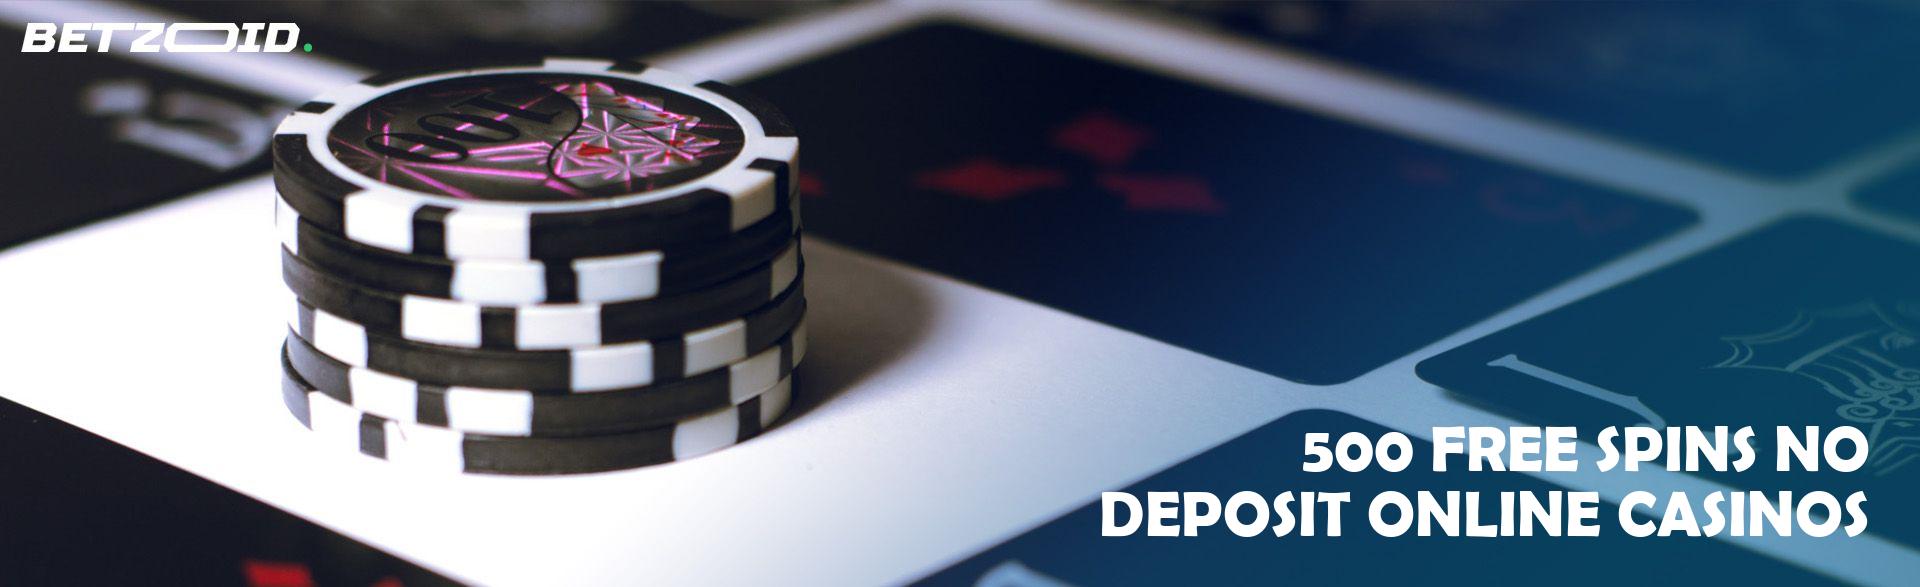 500 Free Spins No Deposit Online Casinos.